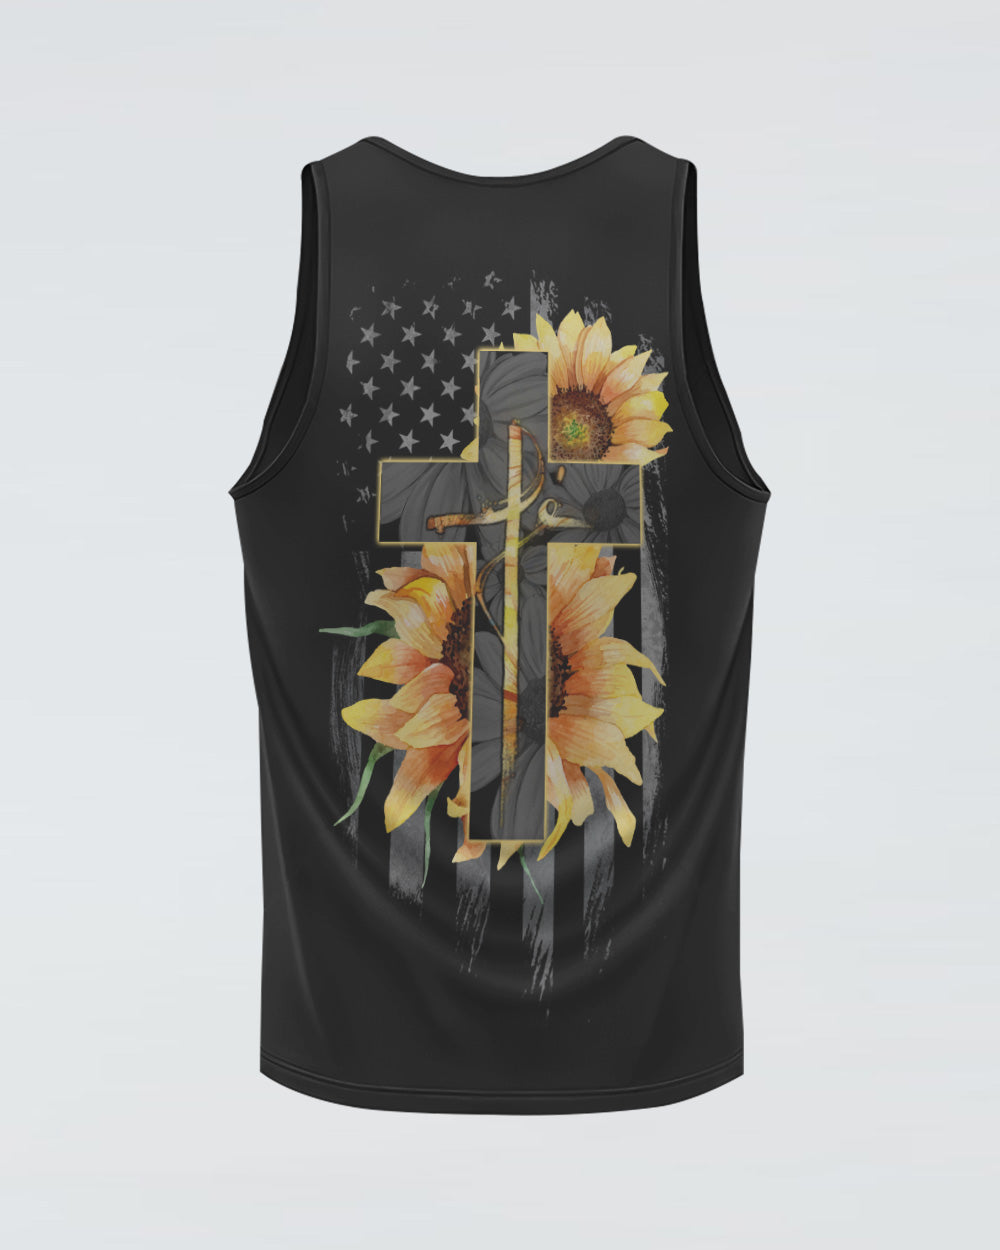 Fé Sunflower Cross American Flag Women's Christian Tanks